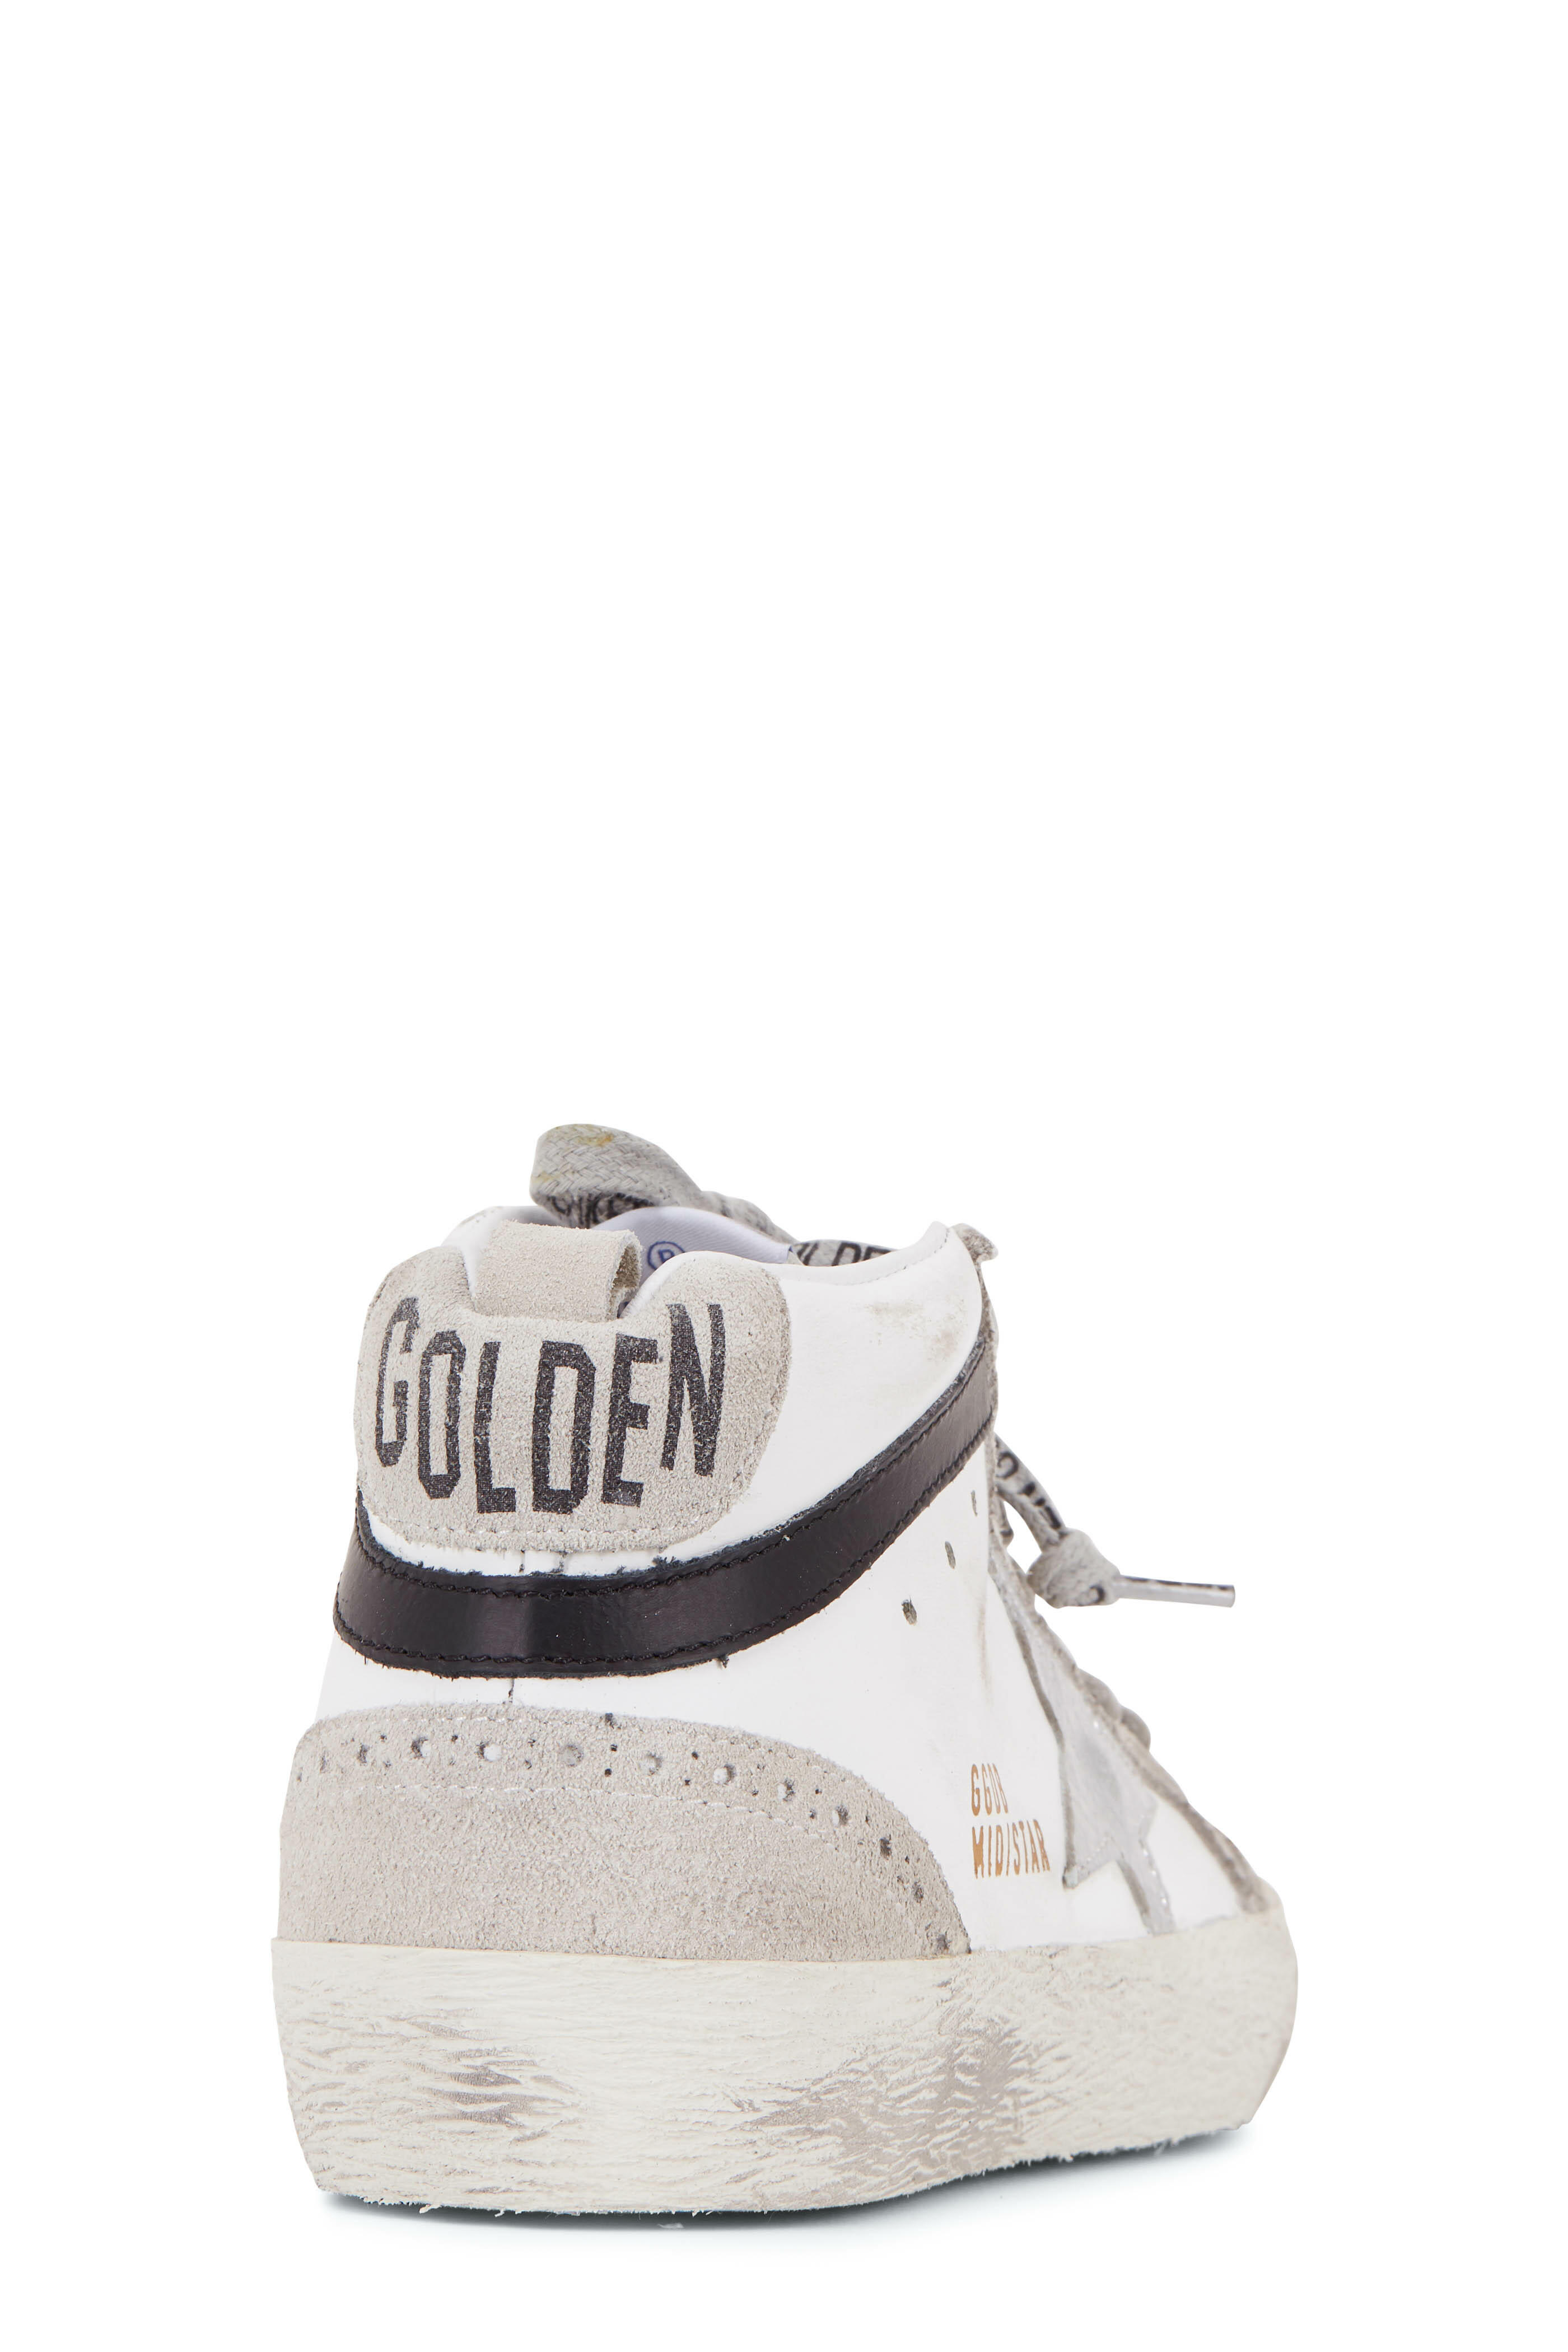 Golden Goose - Midstar White Leather & Silver Star Sneaker